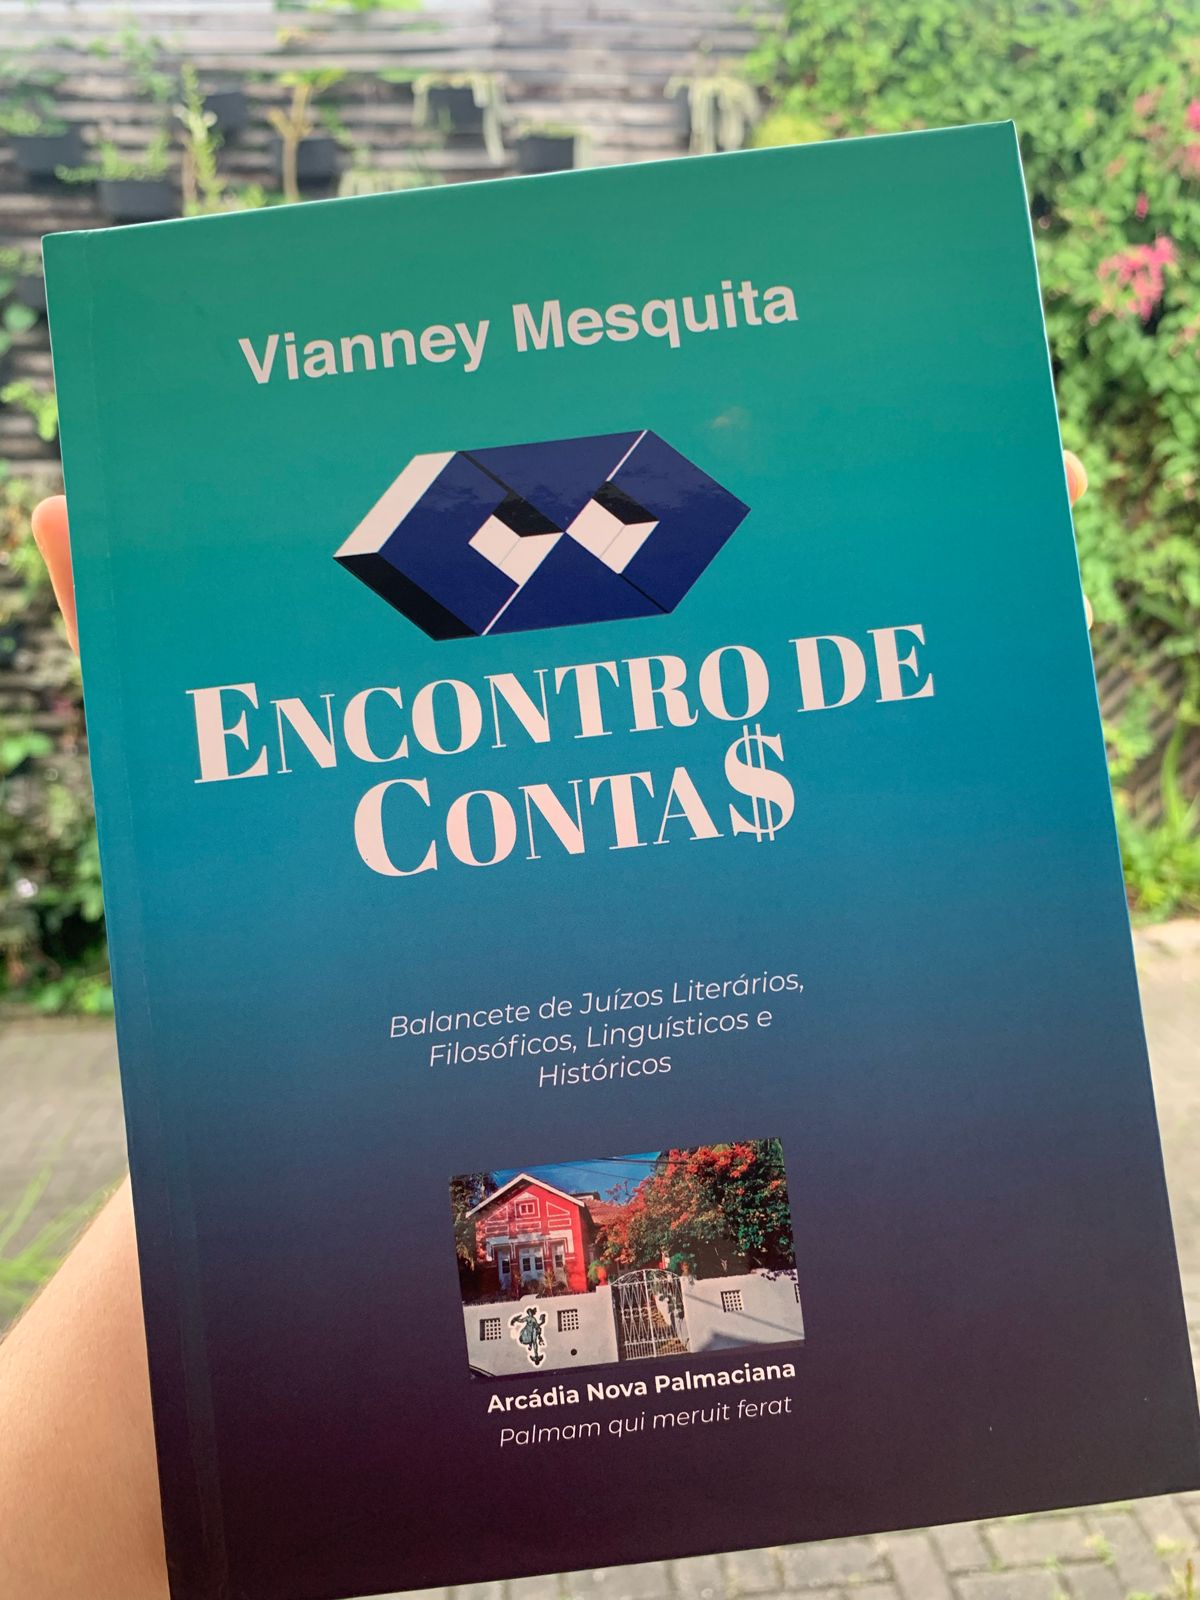 ADUFC APOIA – Prof. Vianney Mesquita lança o livro Encontro de Contas na próxima quinta-feira (25), às 19h, na ADUFC